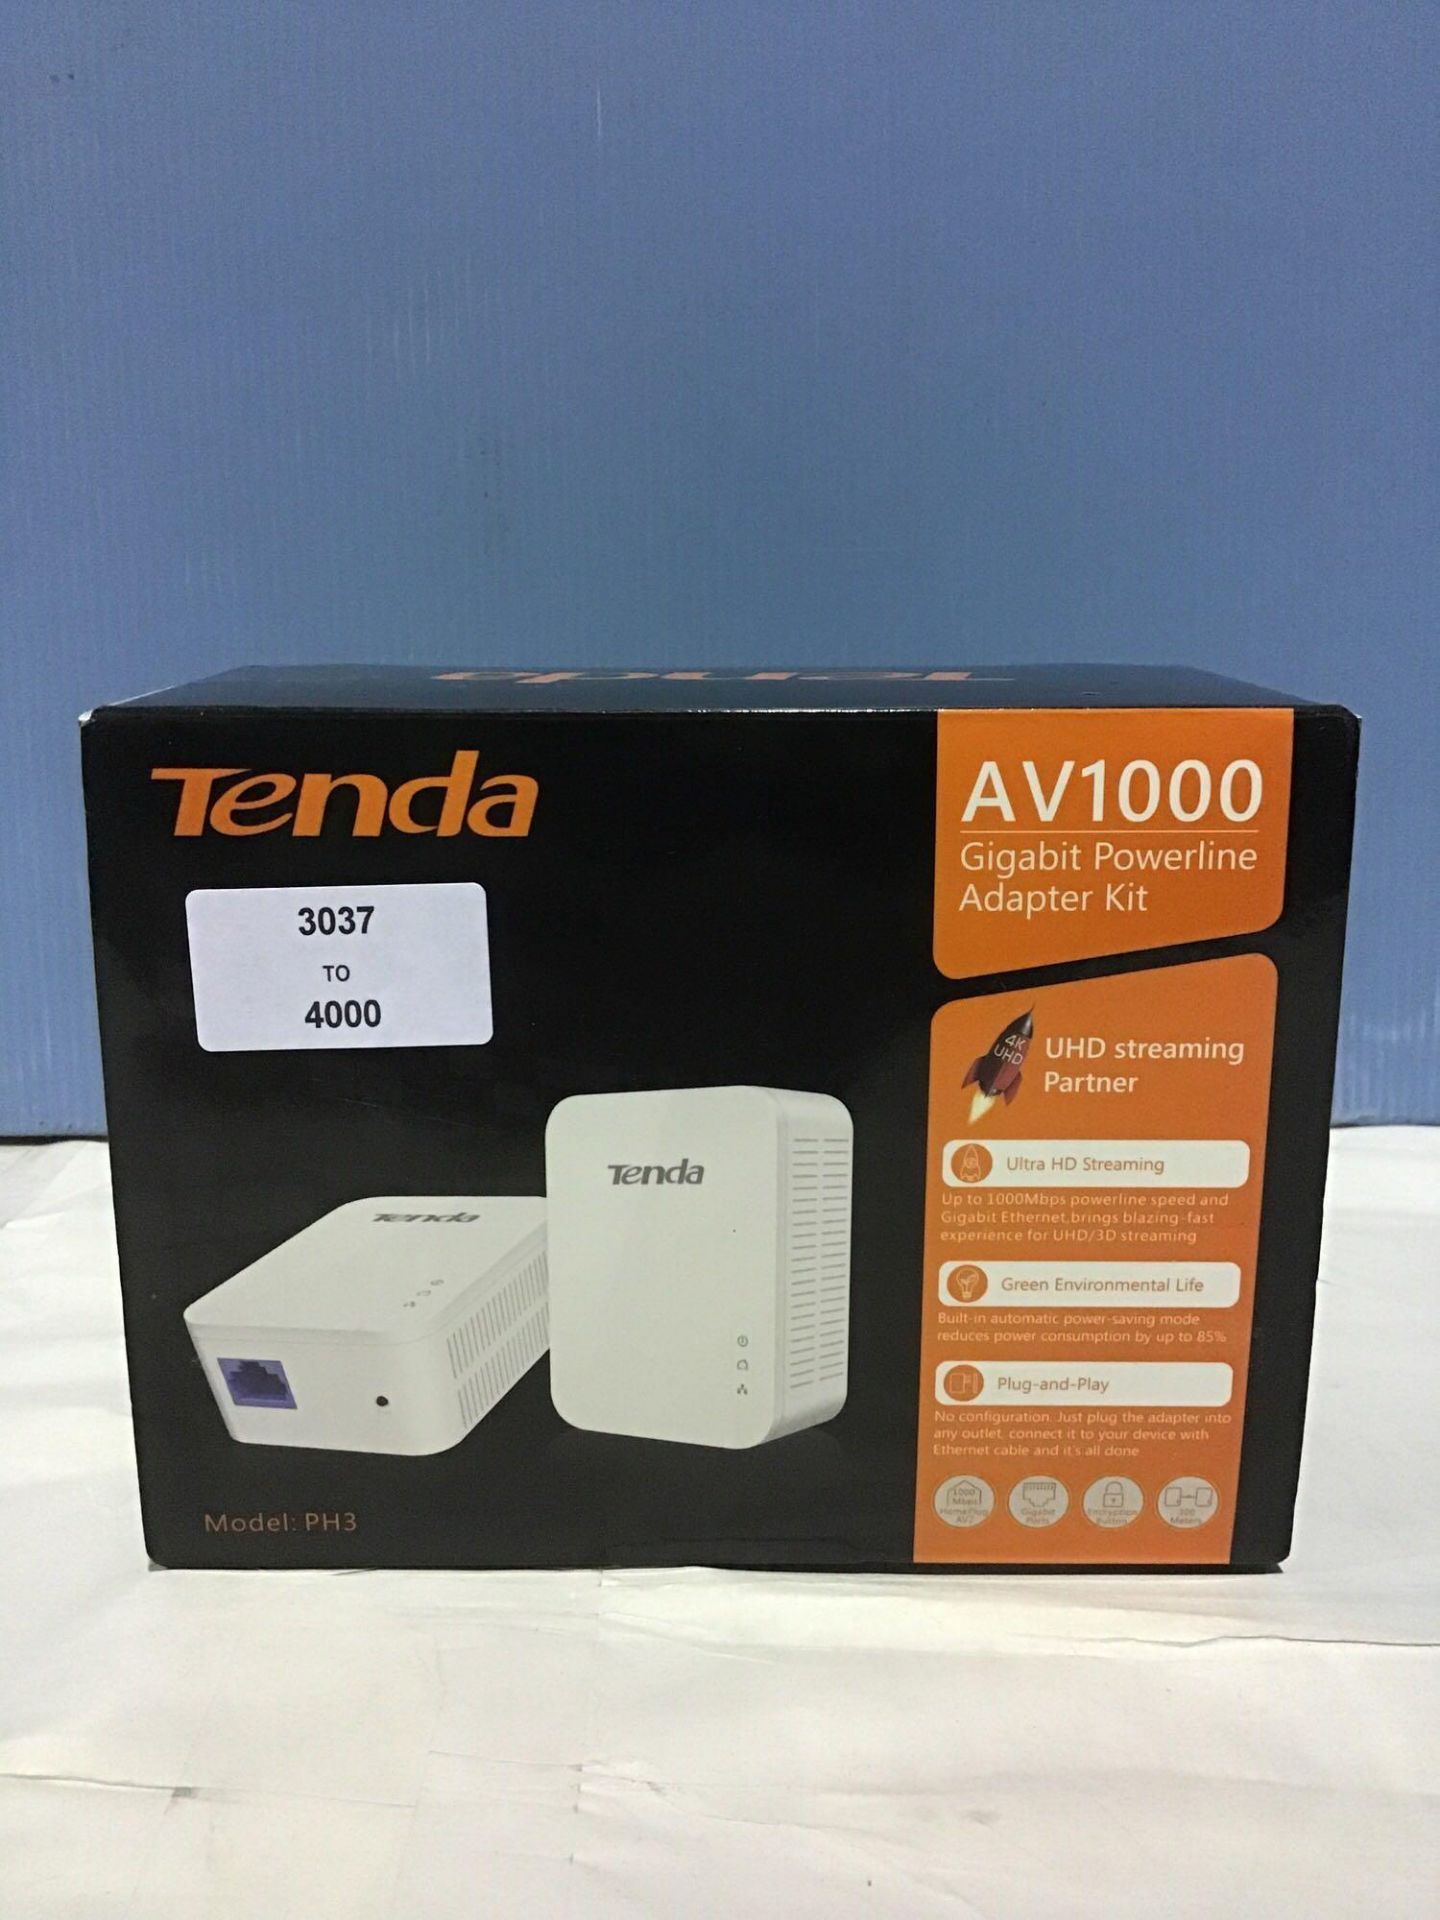 Tenda AV1000 1-Port Gigabit Powerline Adapter, Up to 1000Mbps (PH3),White - Image 3 of 5